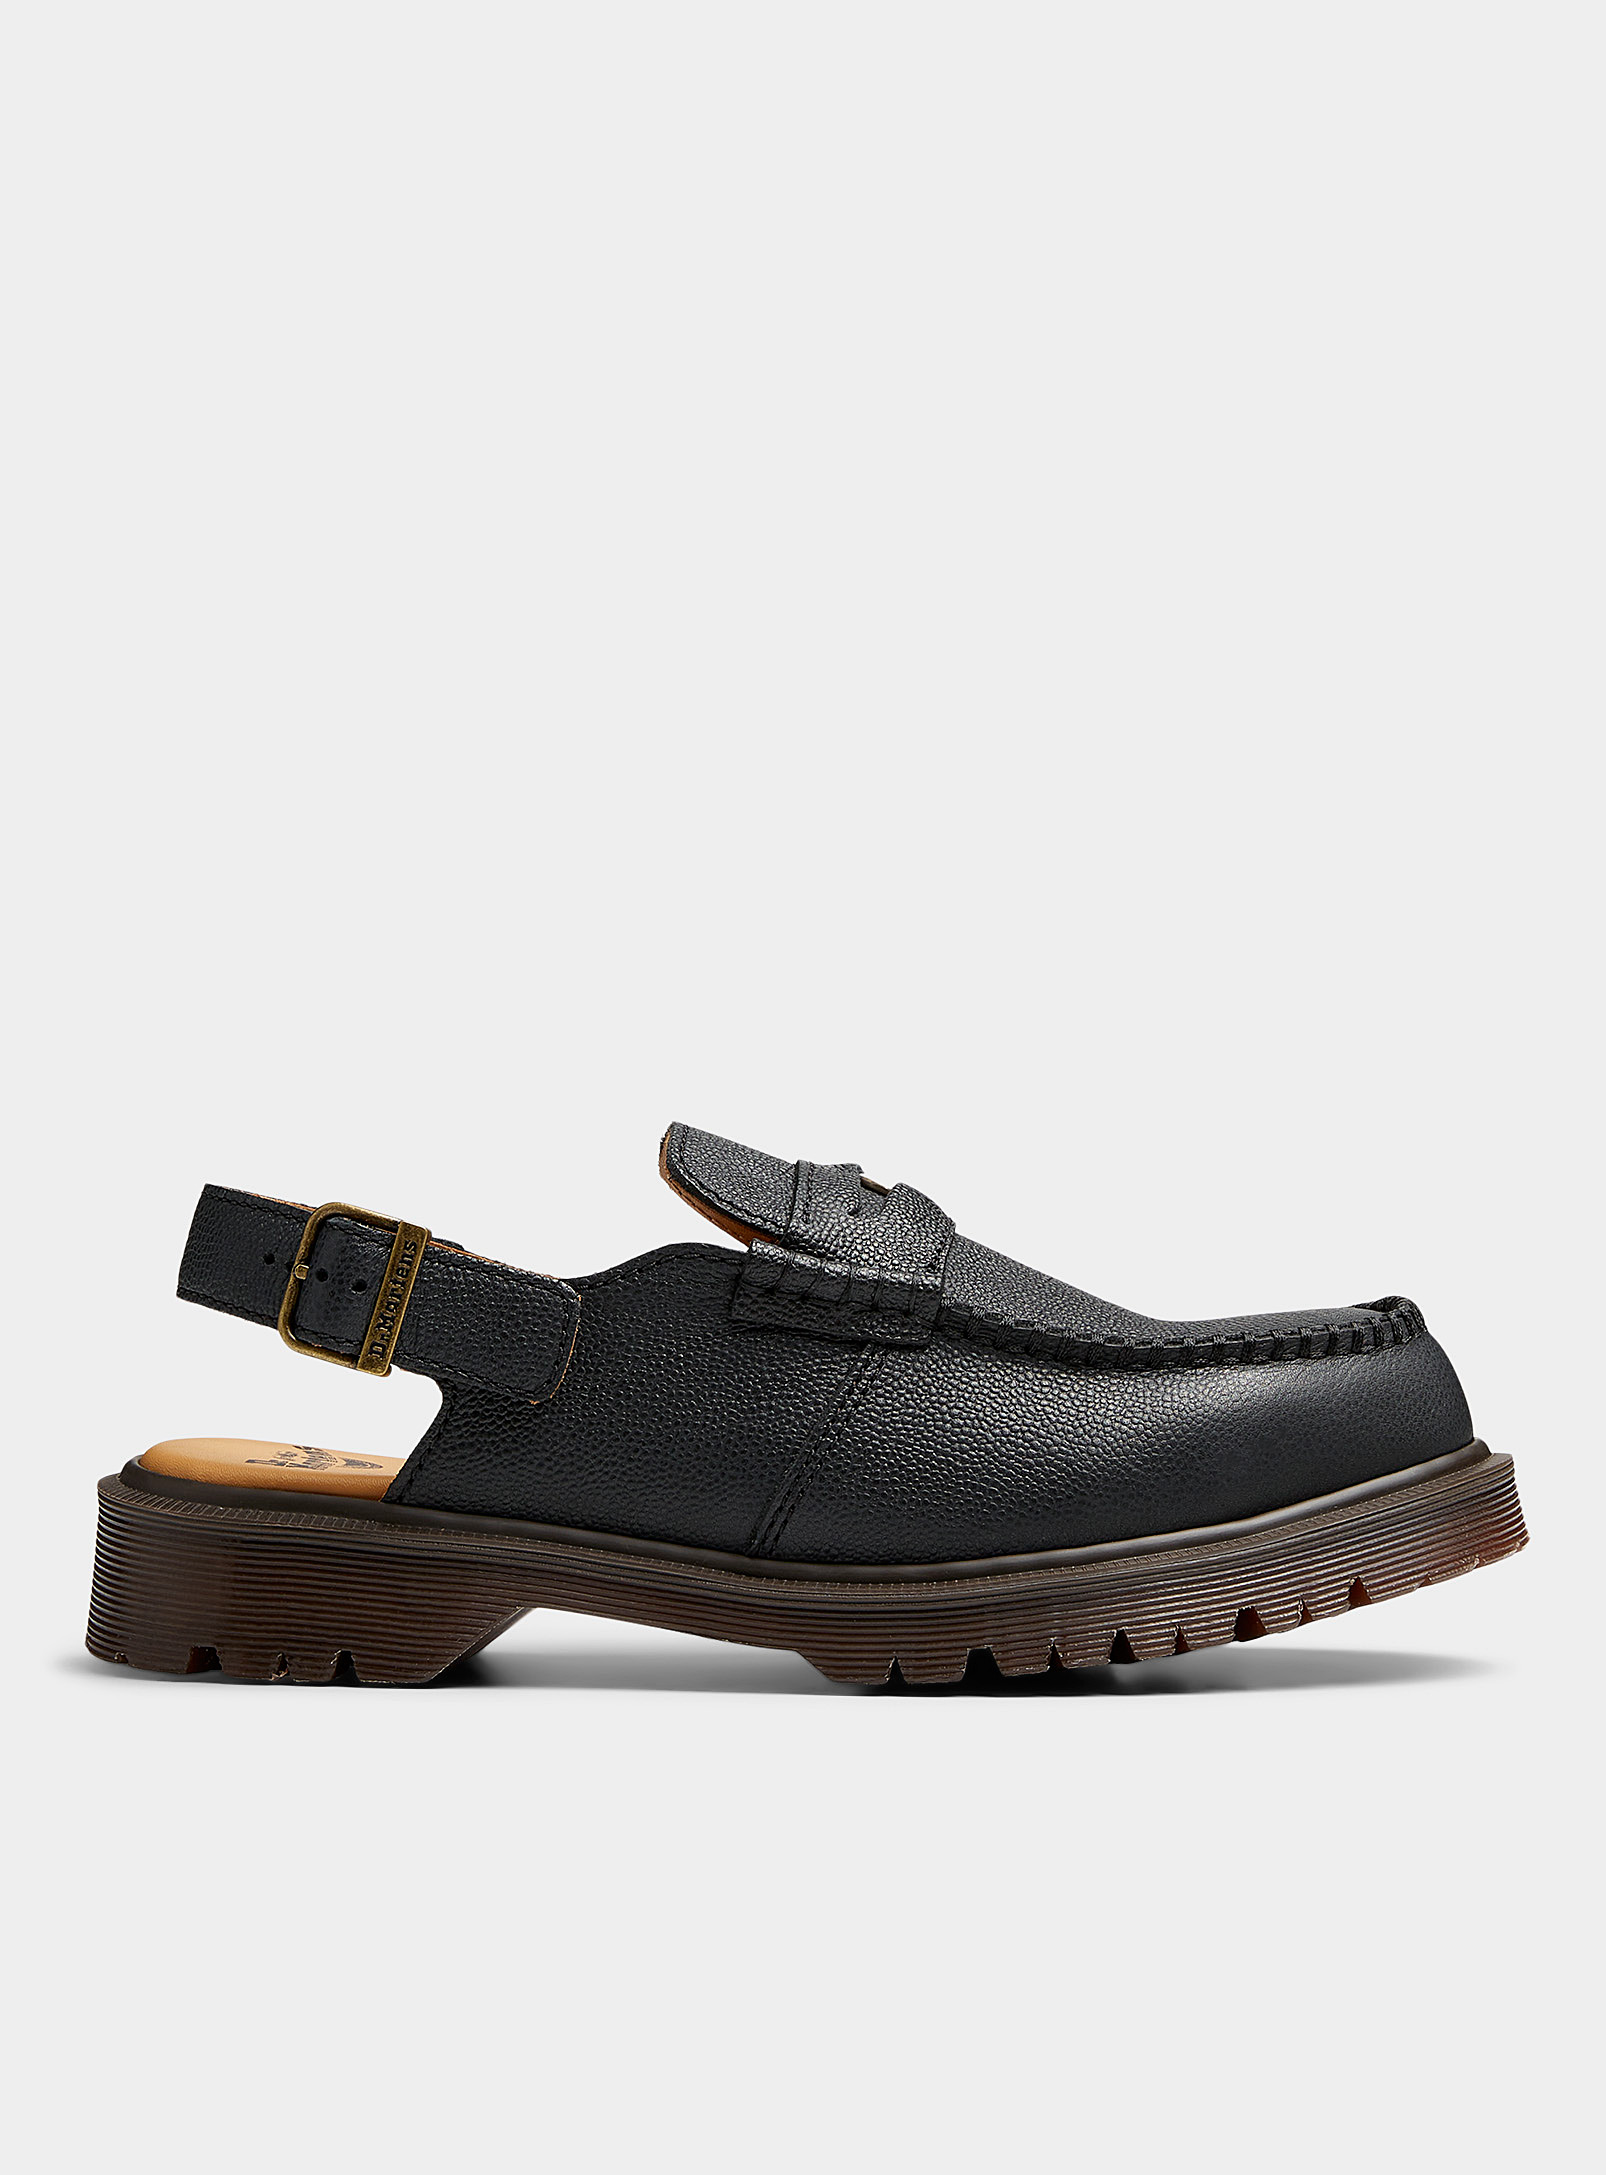 Dr. Martens - Men's Penton smooth leather loafers Men